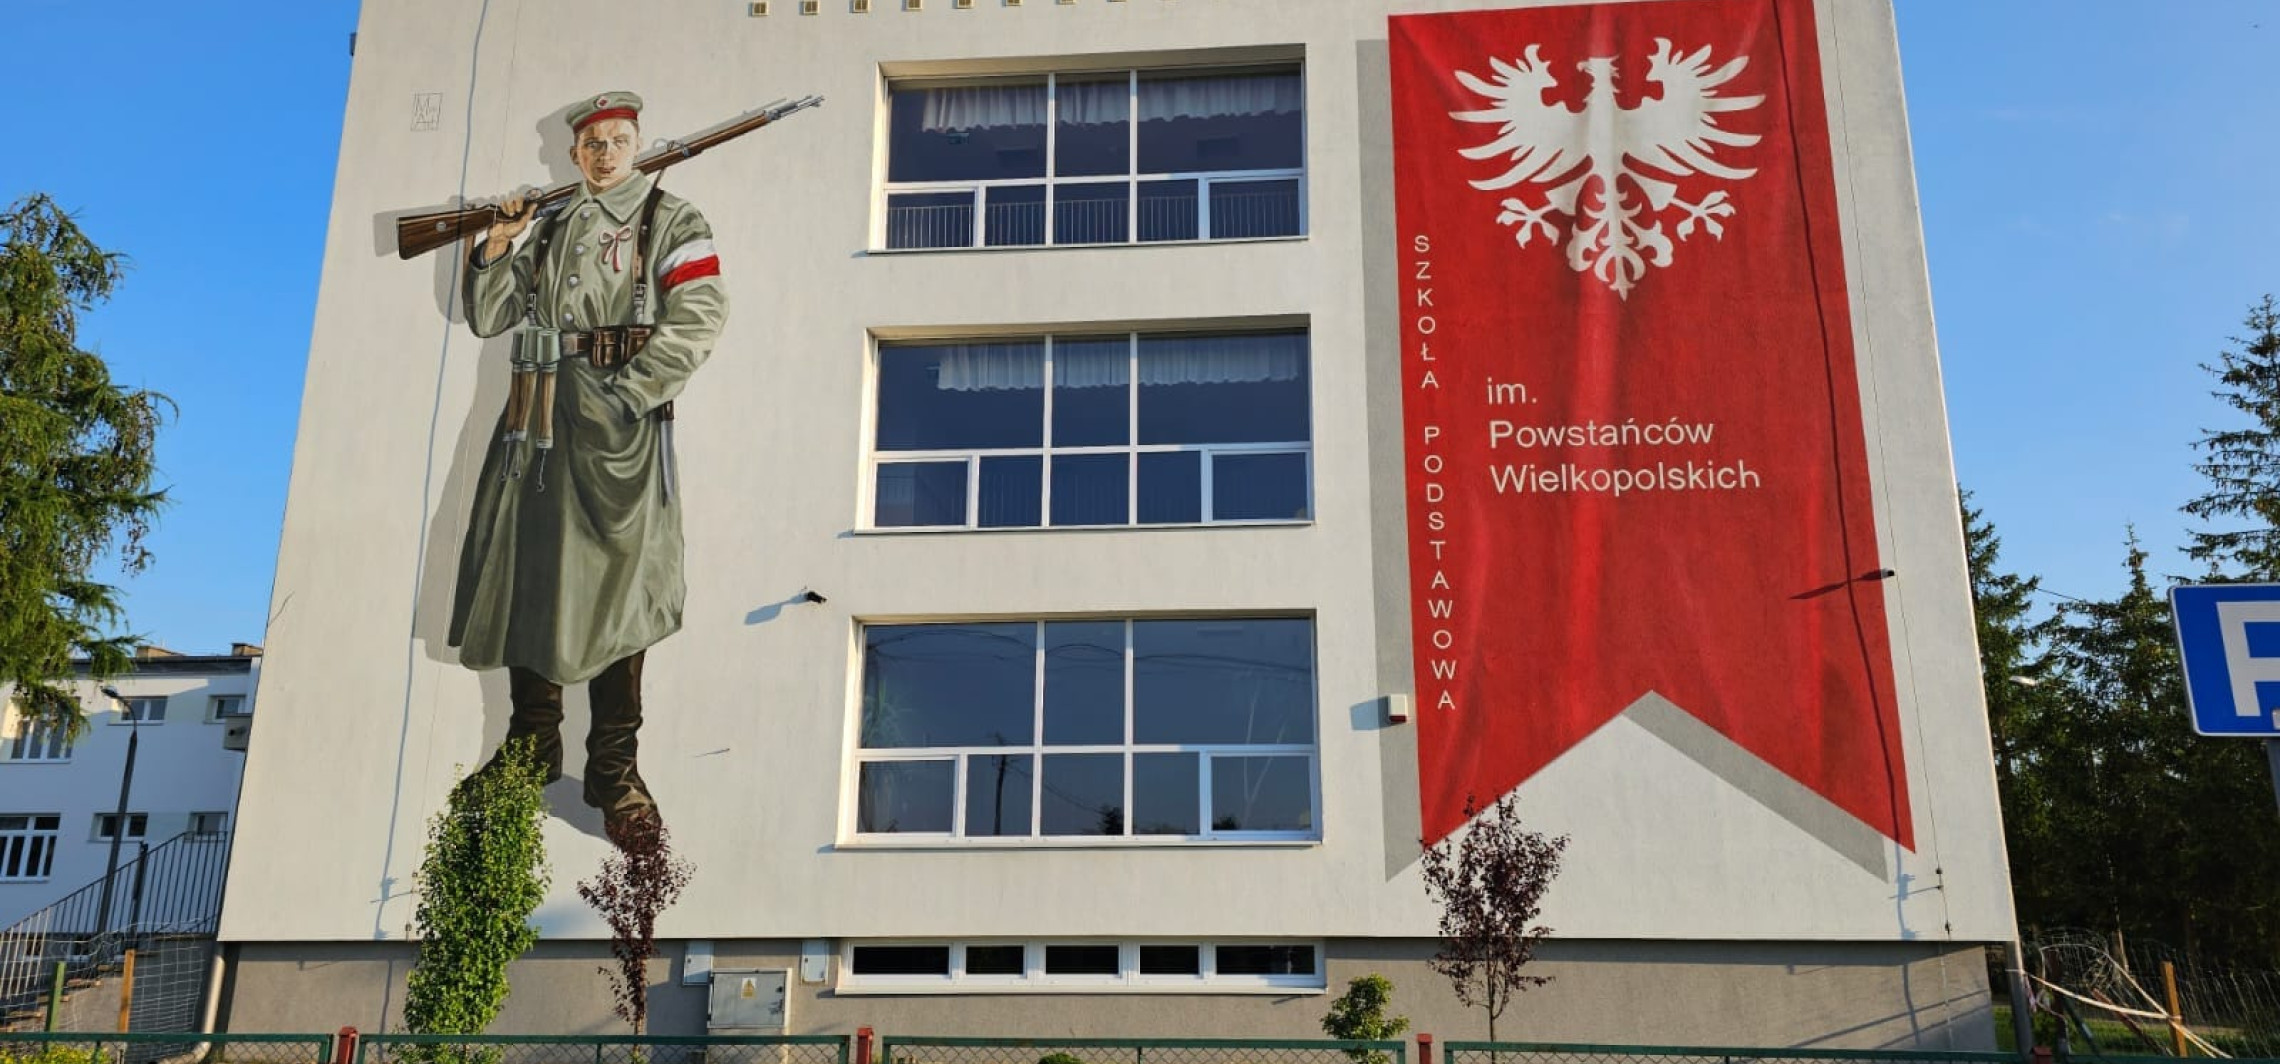 Inowrocław - Artystka namalowała mural na ścianie szkoły